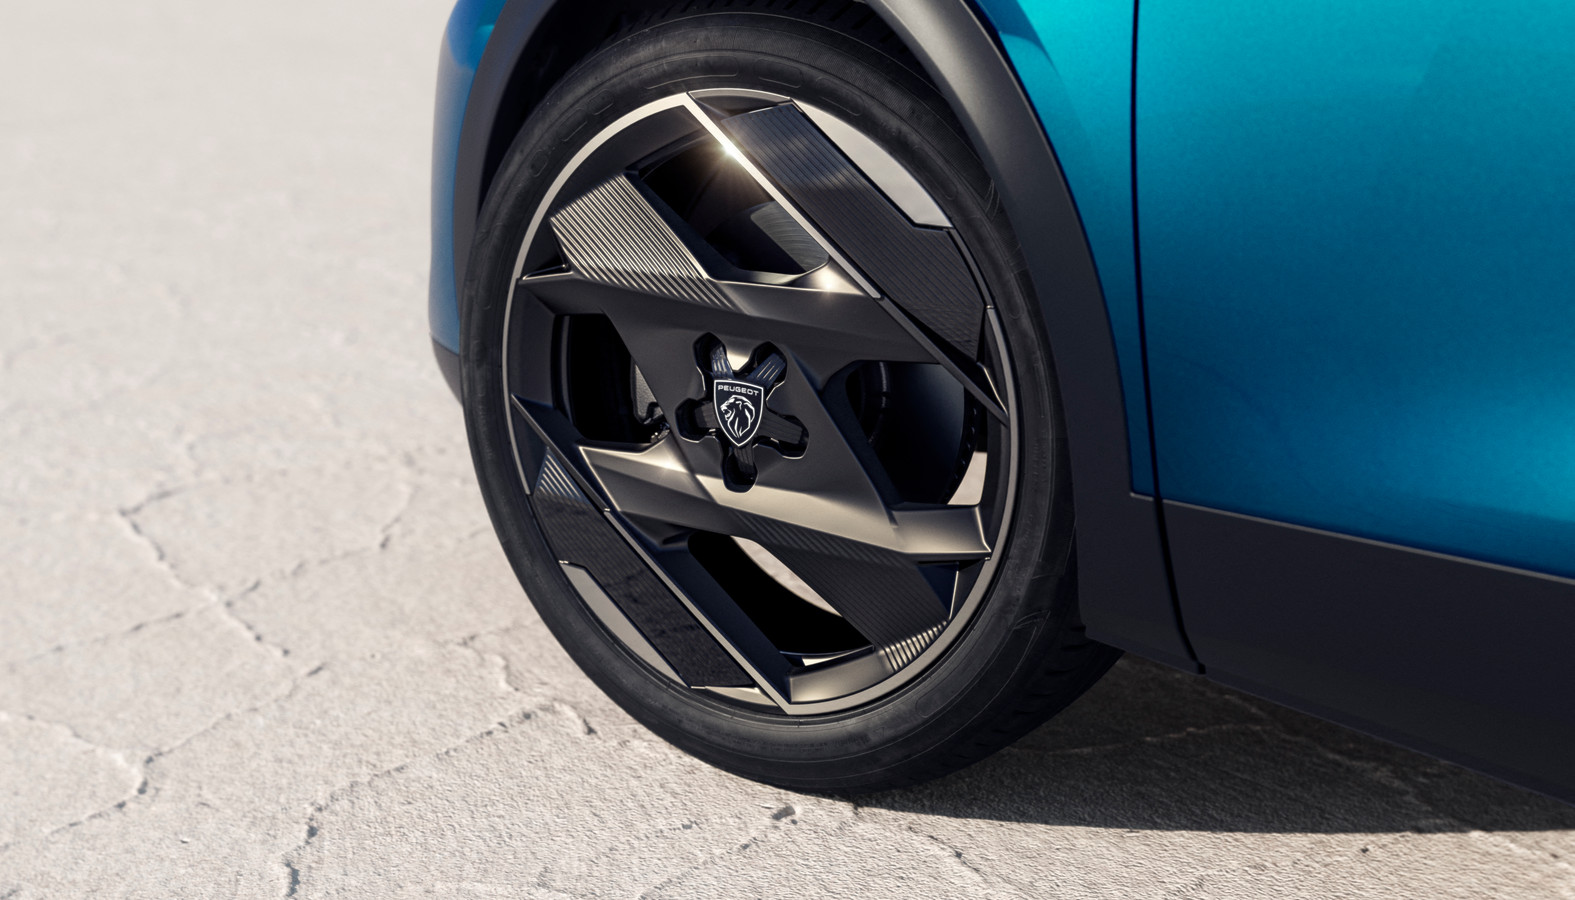 Qua design durft Peugeot weer écht onderscheidend te zijn: deze spraakmakende lichtmetalen wielen (20-inch, optioneel voor de GT) passen in de beste Franse traditie